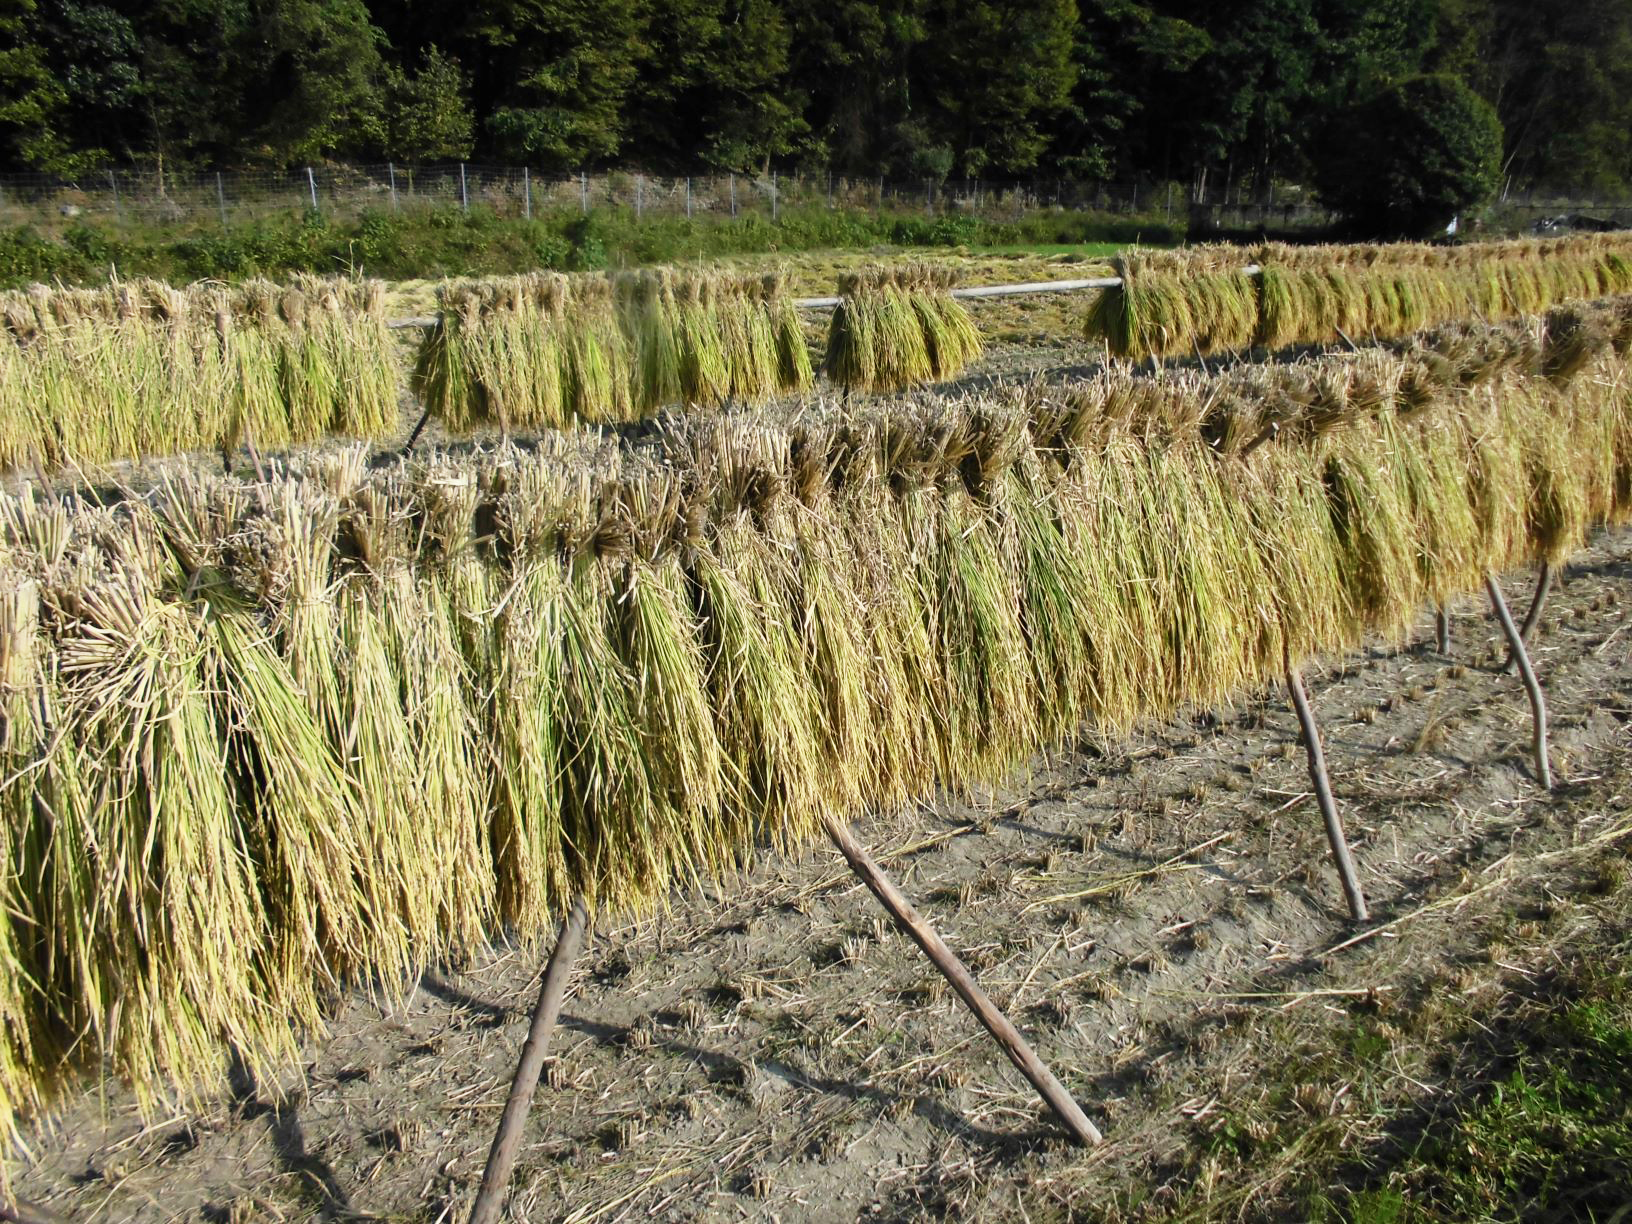 「はさがけ米」は全く農薬を使わず昔ながらの製法で栽培。「ひょうご安心ブランド農産物」に認定されている。